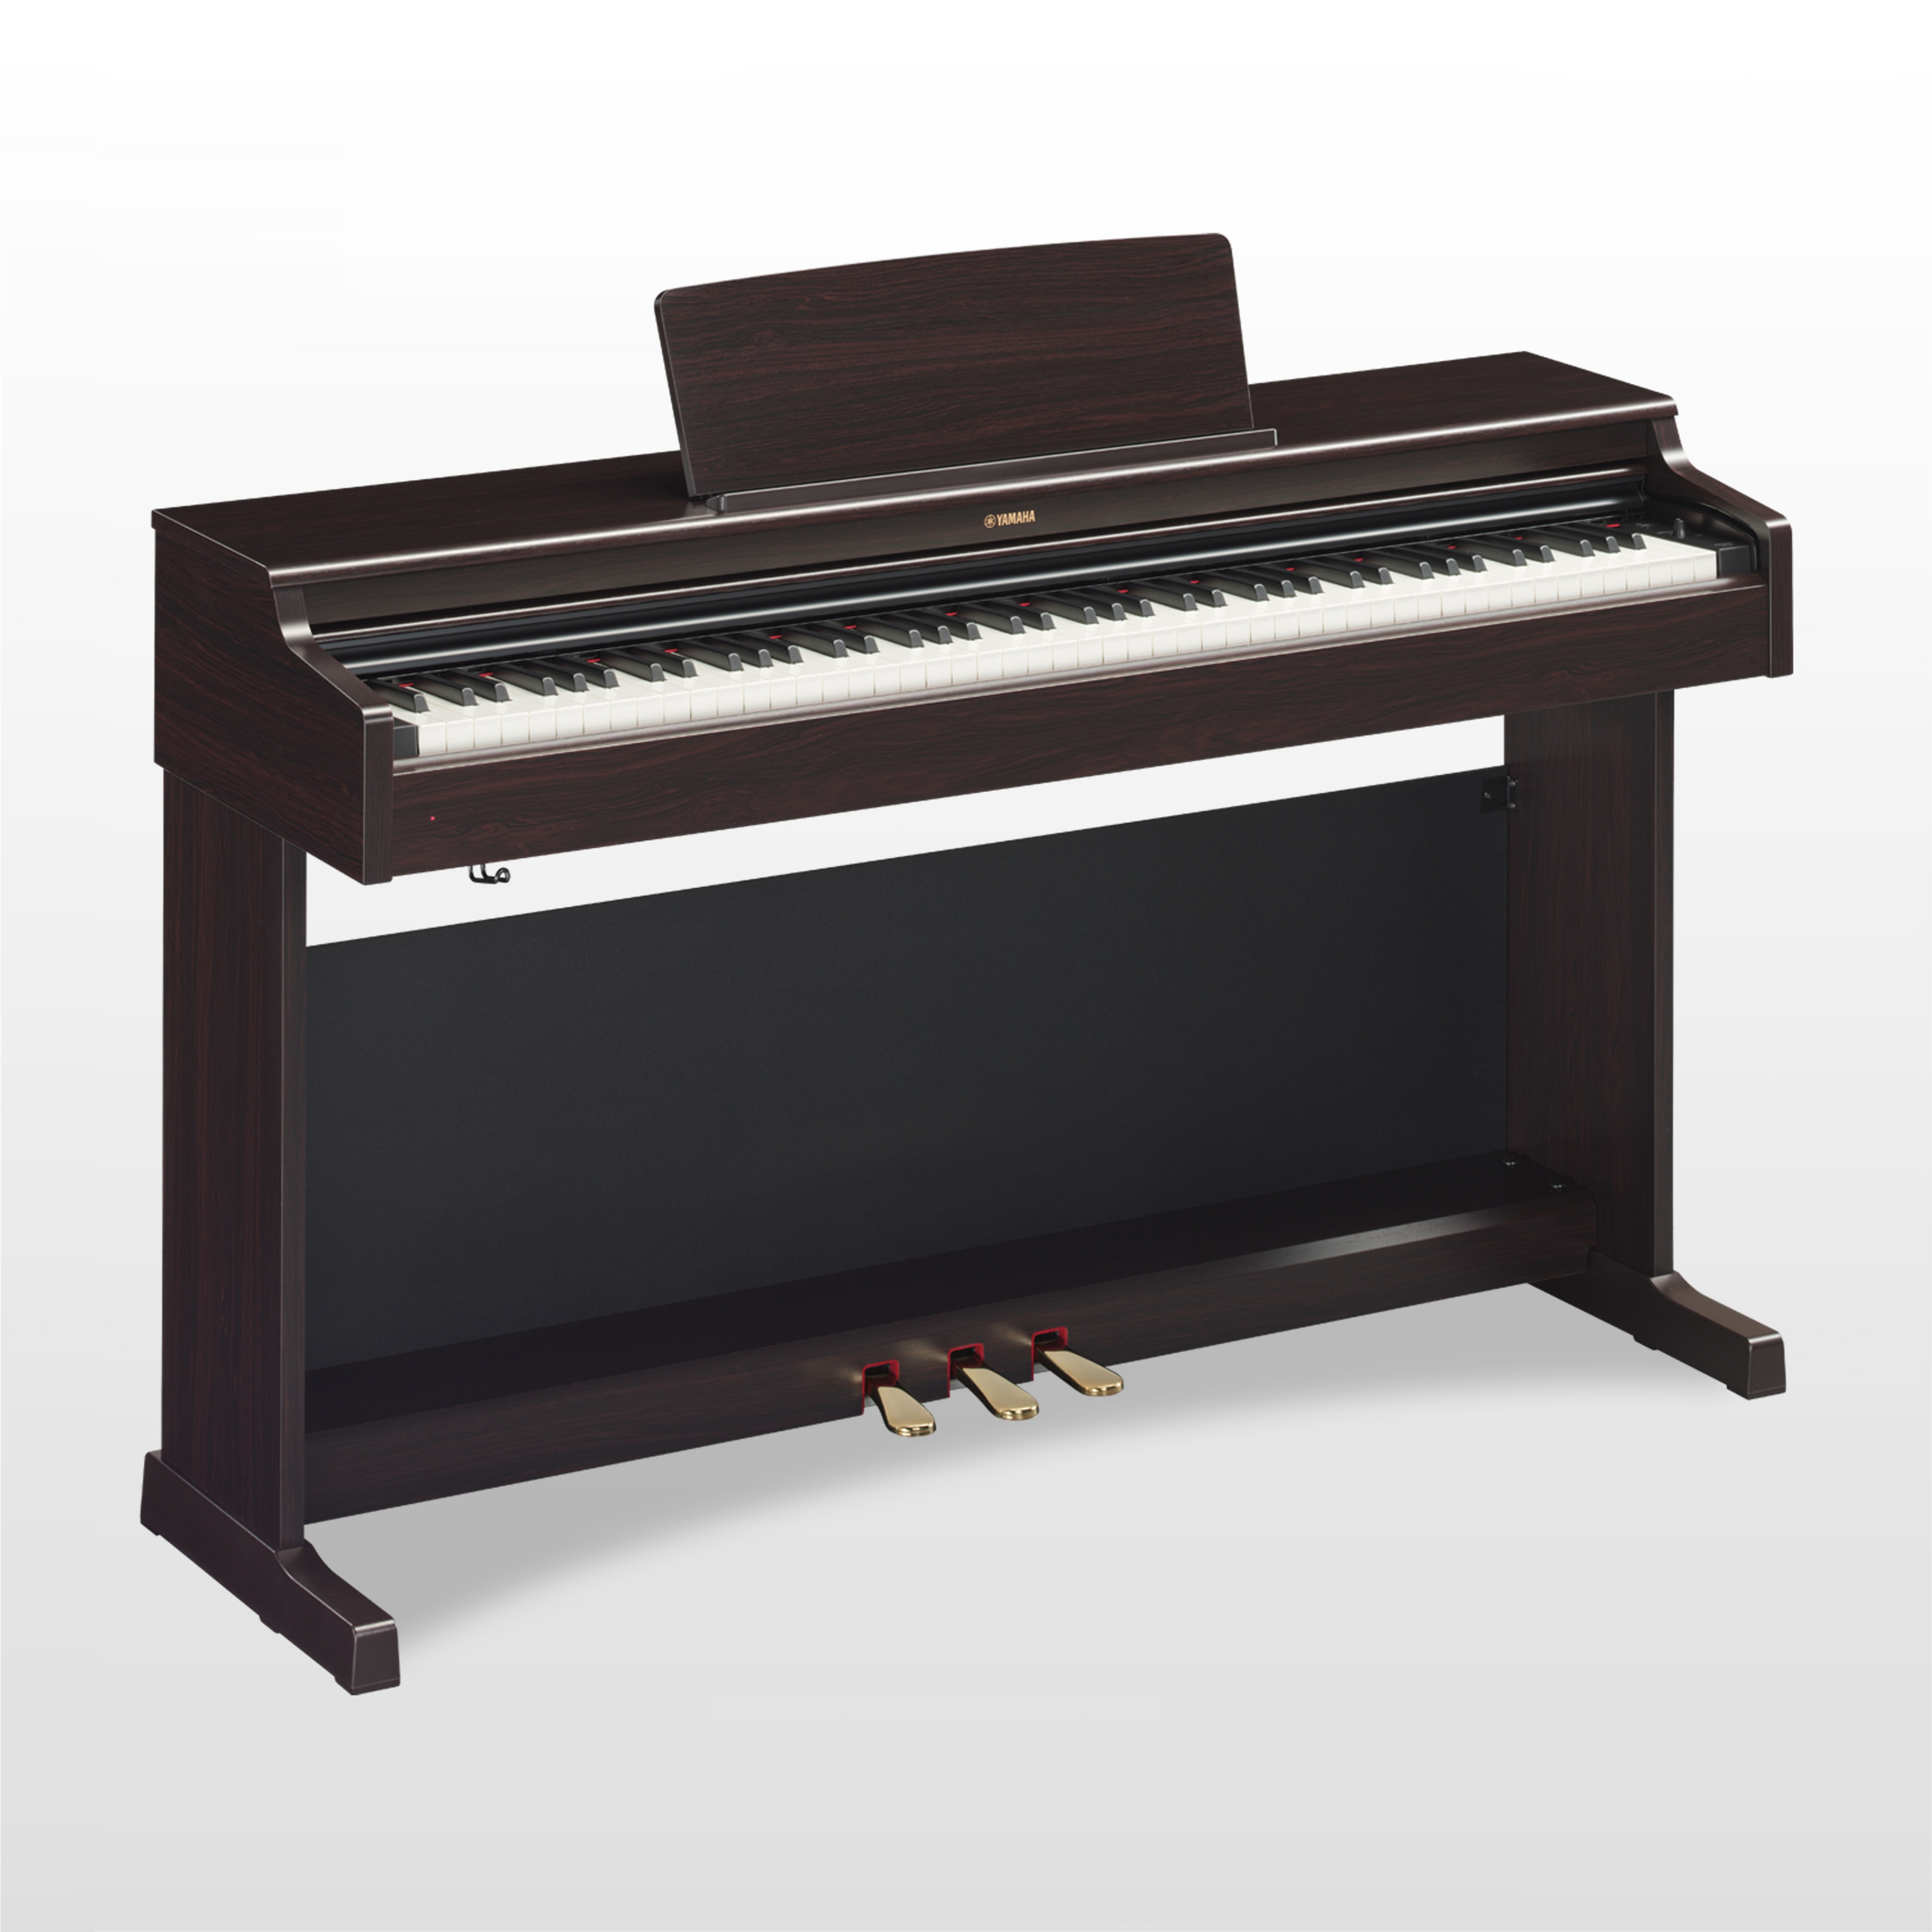 YDP-164 - Accessories - ARIUS - Pianos - Musical Instruments ...